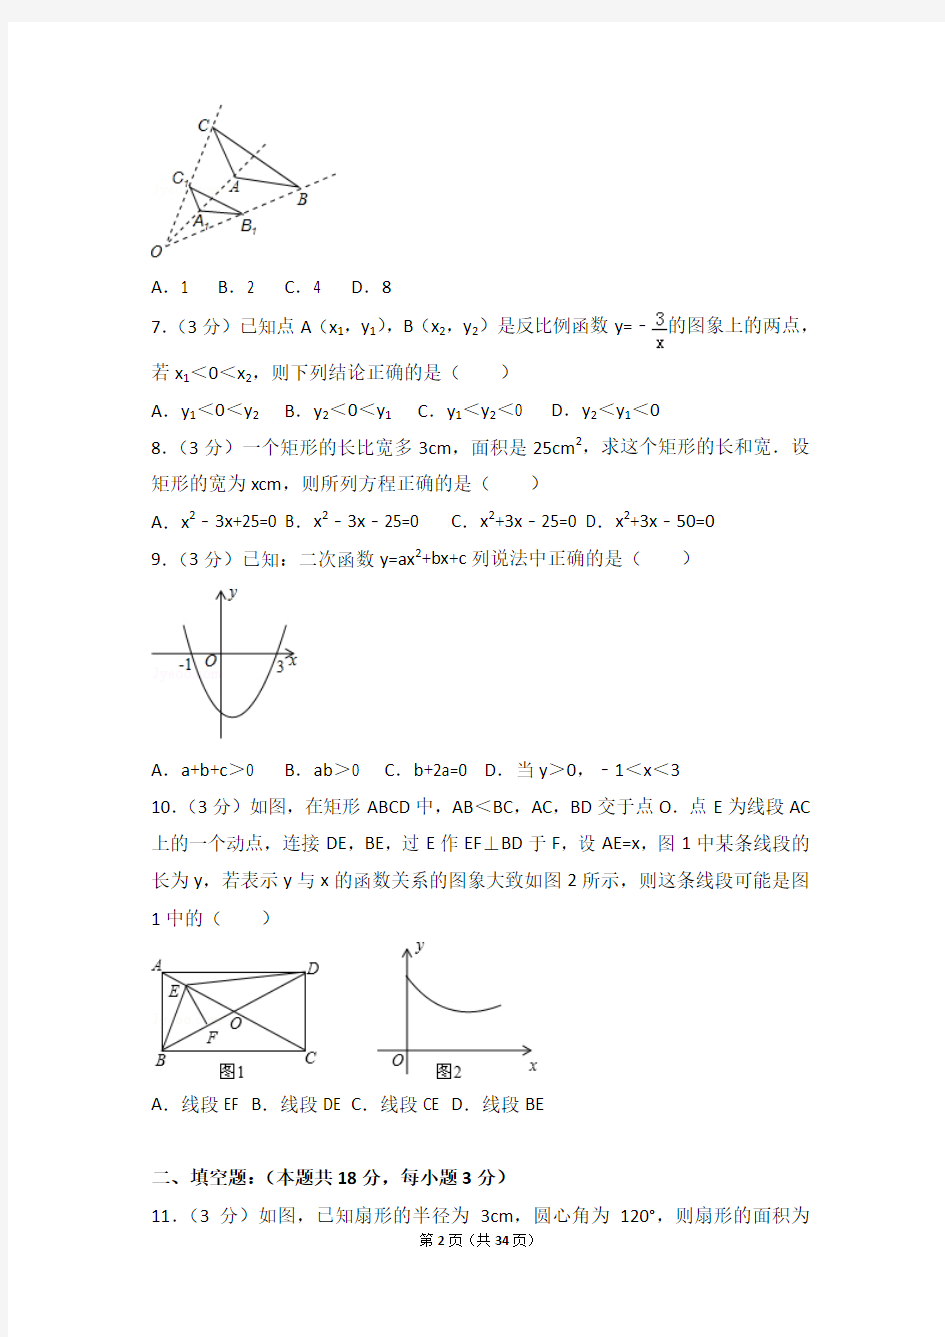 2015年北京市西城区普通校中考数学模拟试卷和答案(3月份)